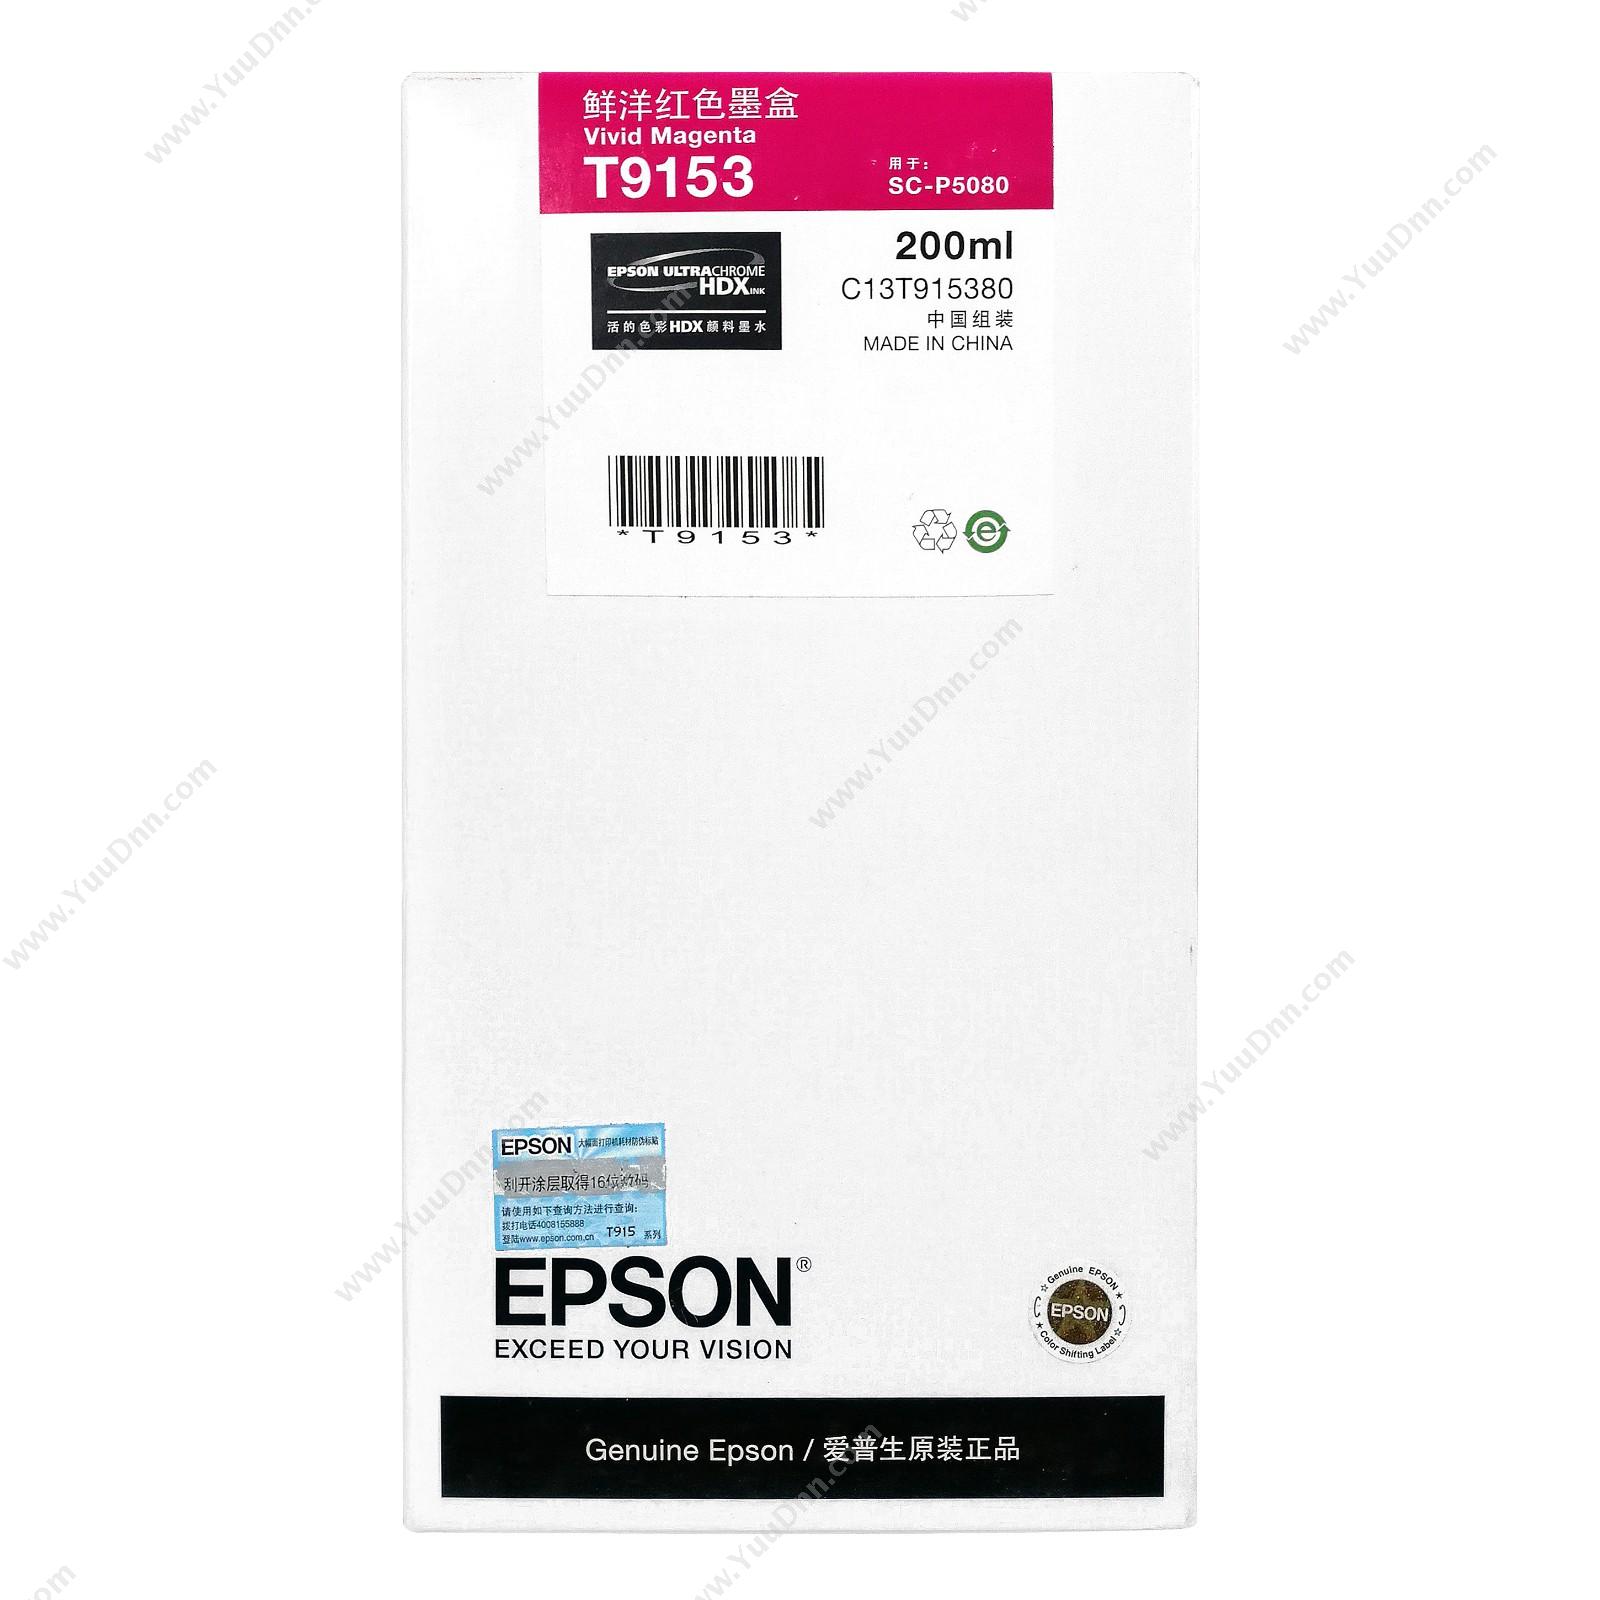 爱普生 EpsonP5080鲜洋红200ml(C13T915380)墨盒